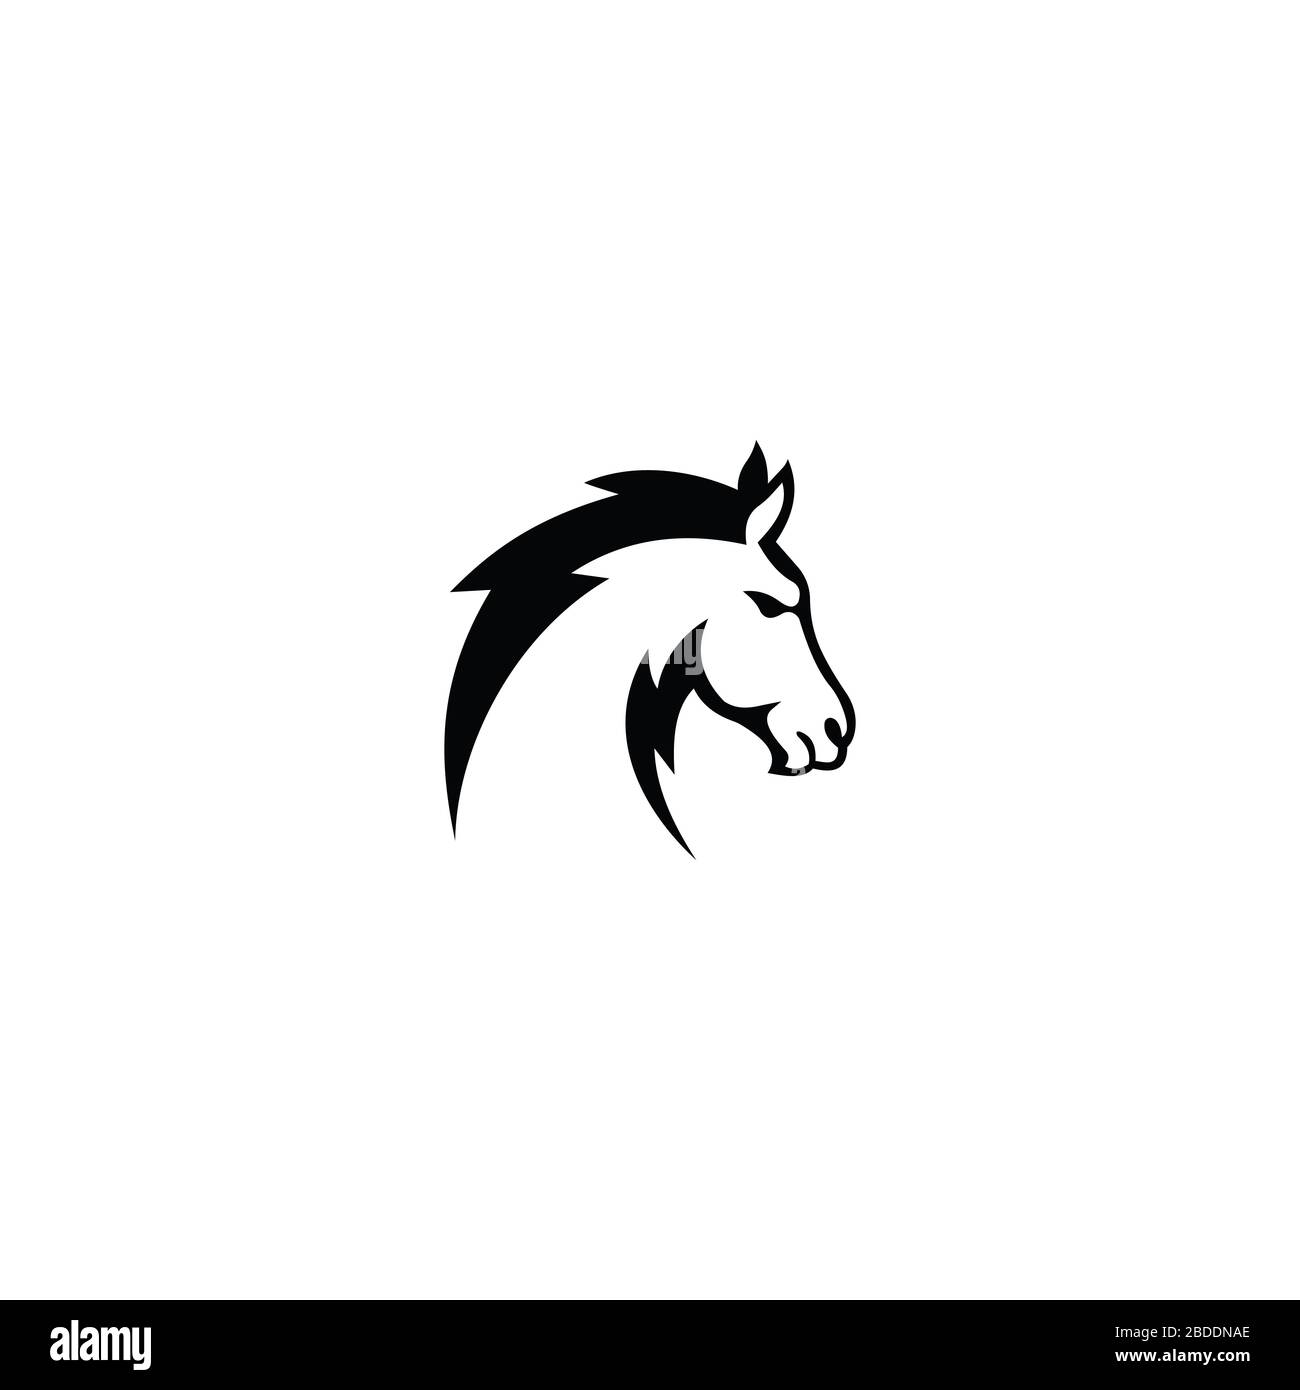 Animal horse logo vector design template Stock Vector